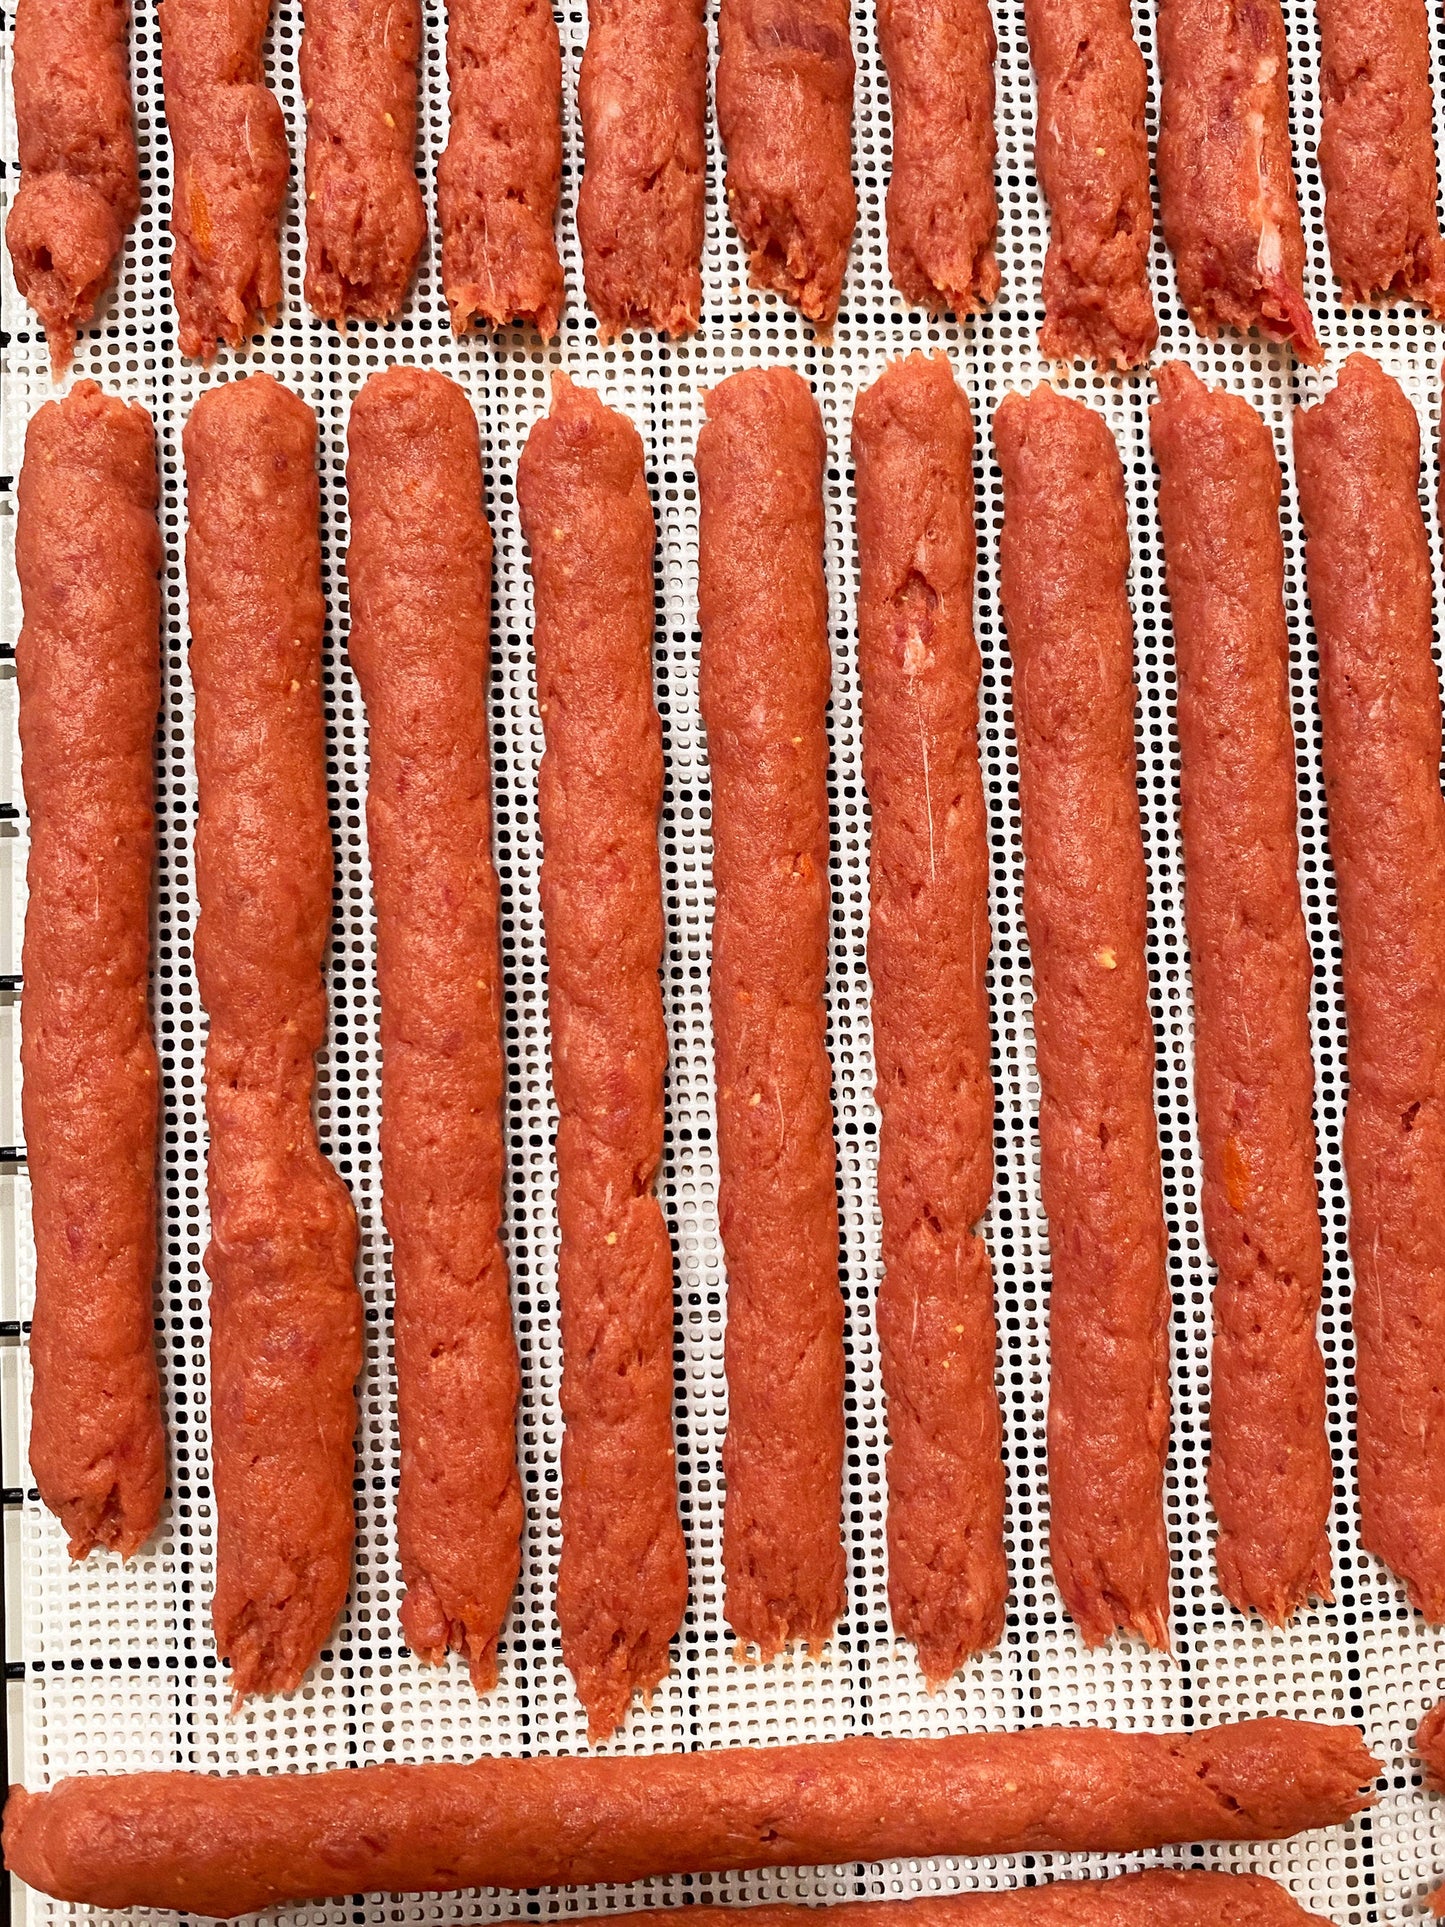 Beef Carrot Yolk Strips